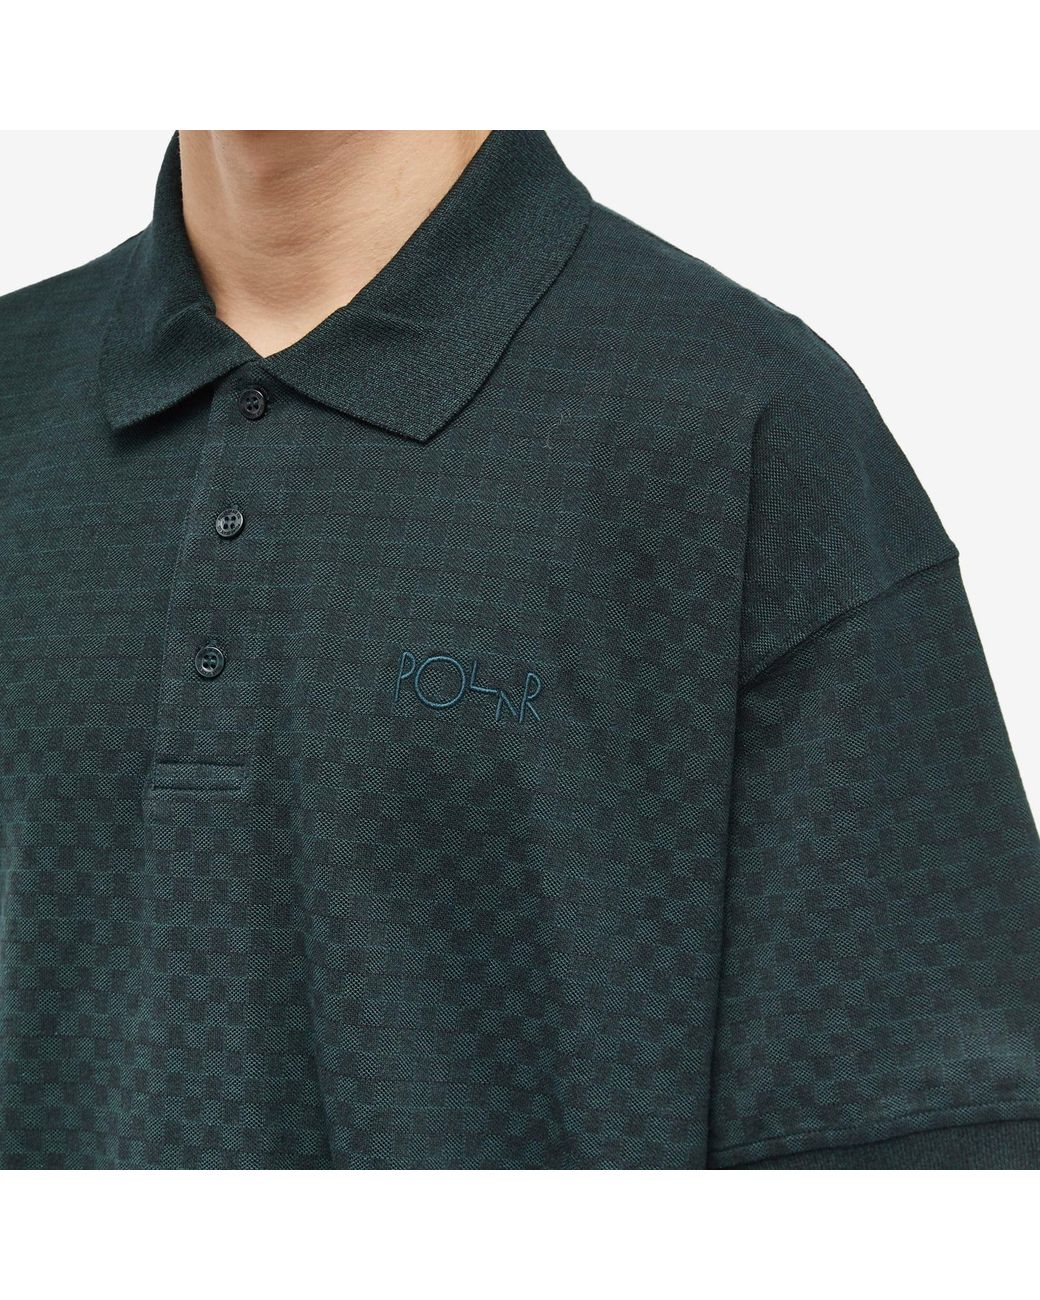 Louis Vuitton Grey Checkerboard And Green Checkerboard Polo Shirt